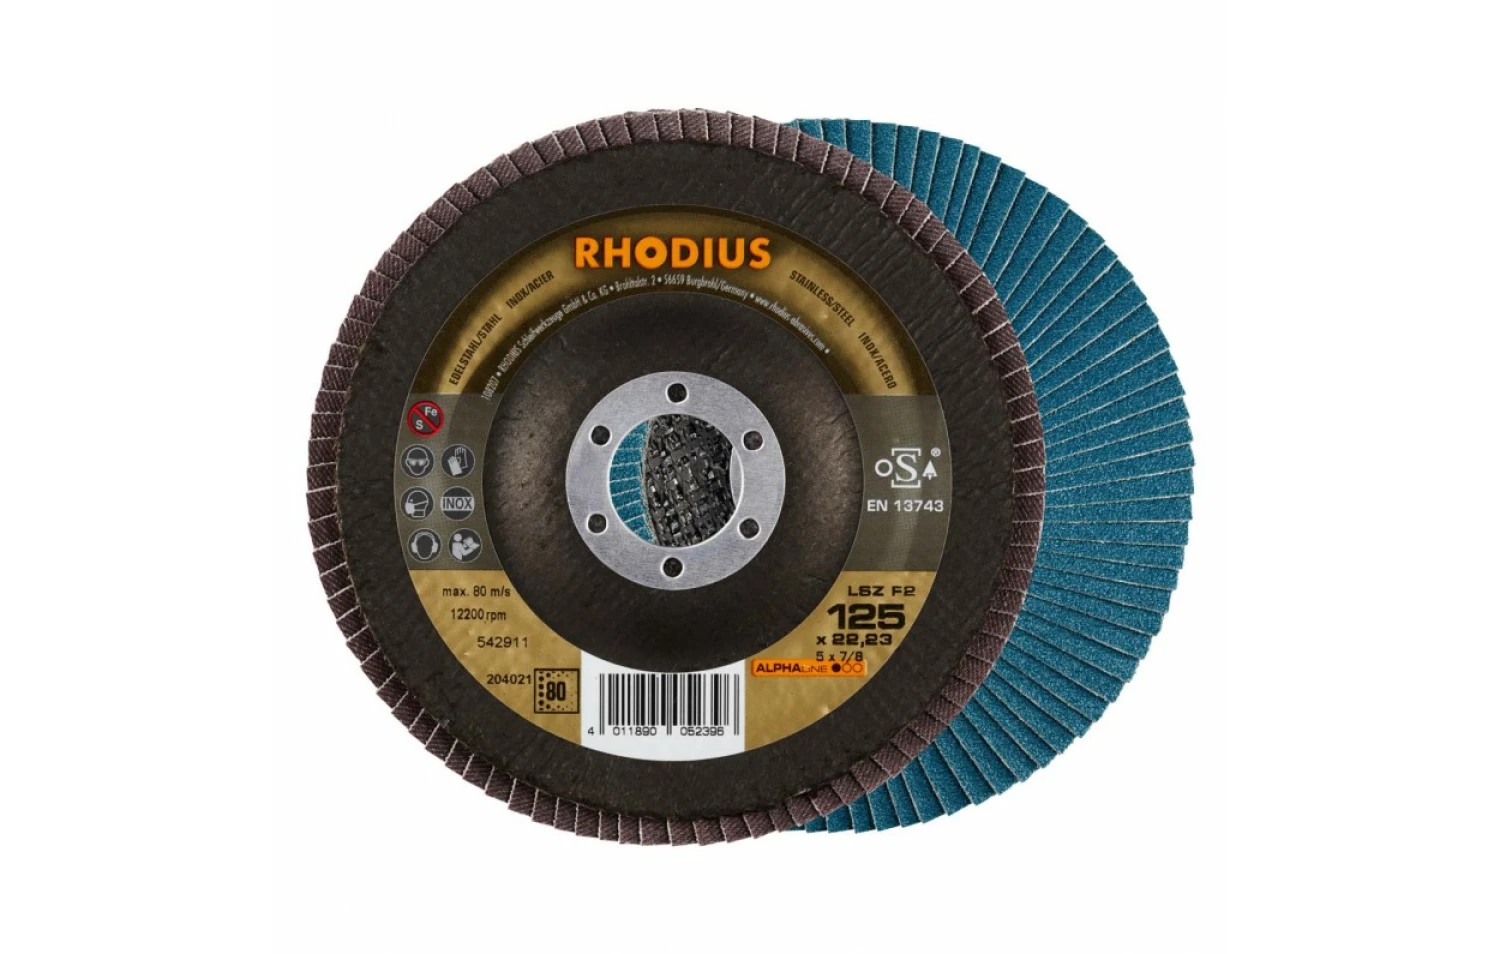 Rhodius 204021 ALPHAline I LSZ F2 Lamellenslijpschijf - K80 - 125 x 22,23mm - Ferro (10st)-image